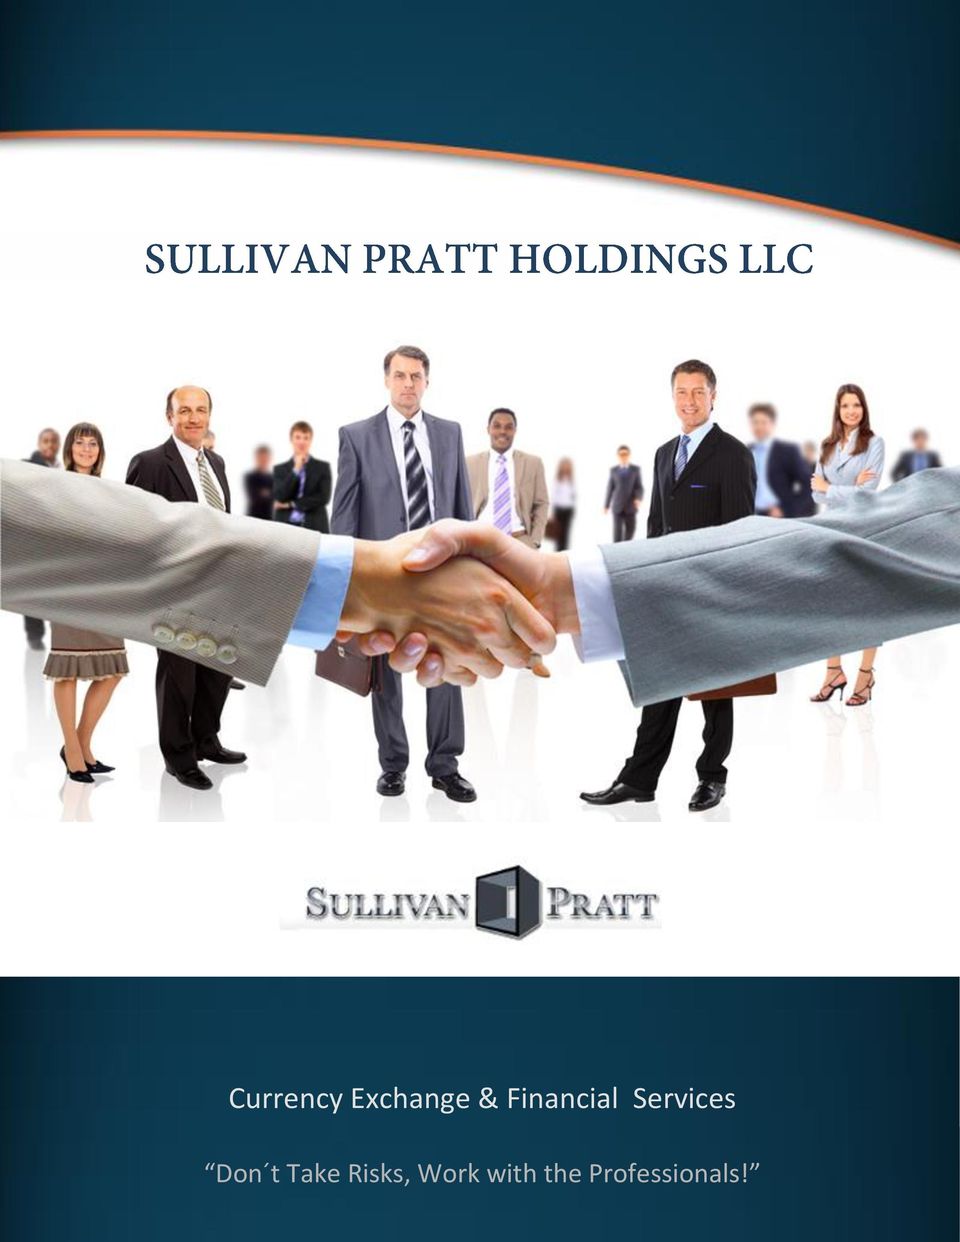 Sullivan Pratt Holdings LLC 400 m N de la Contraloria, Sabana,